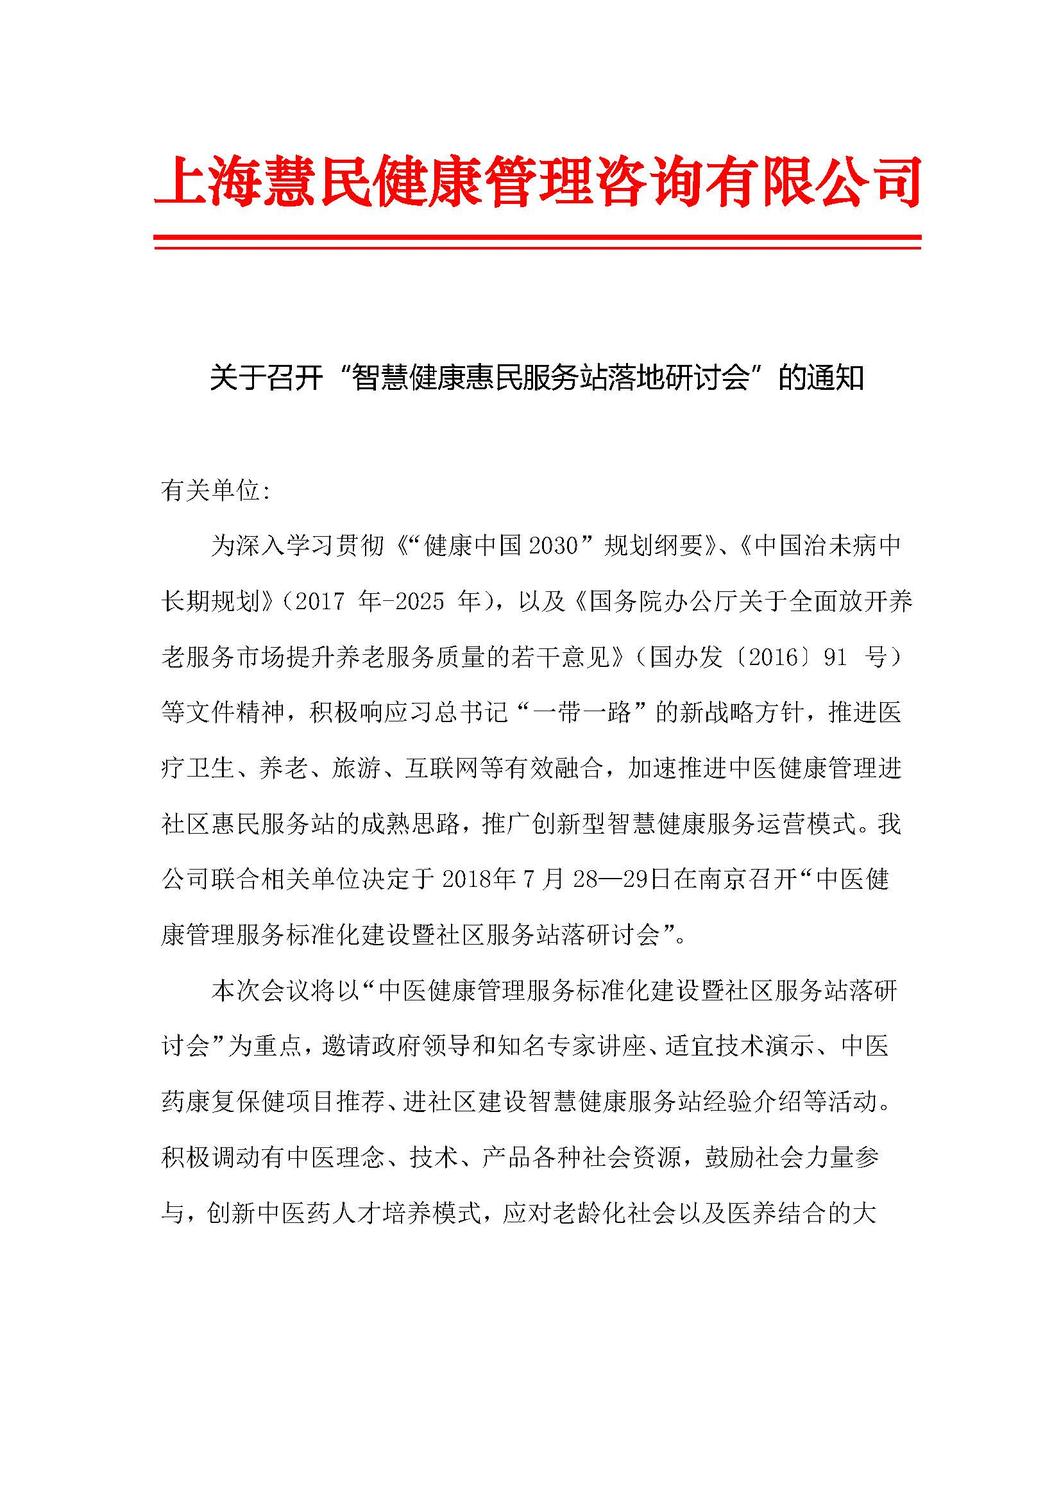 2018年7月南京会议通知_页面_1.jpg